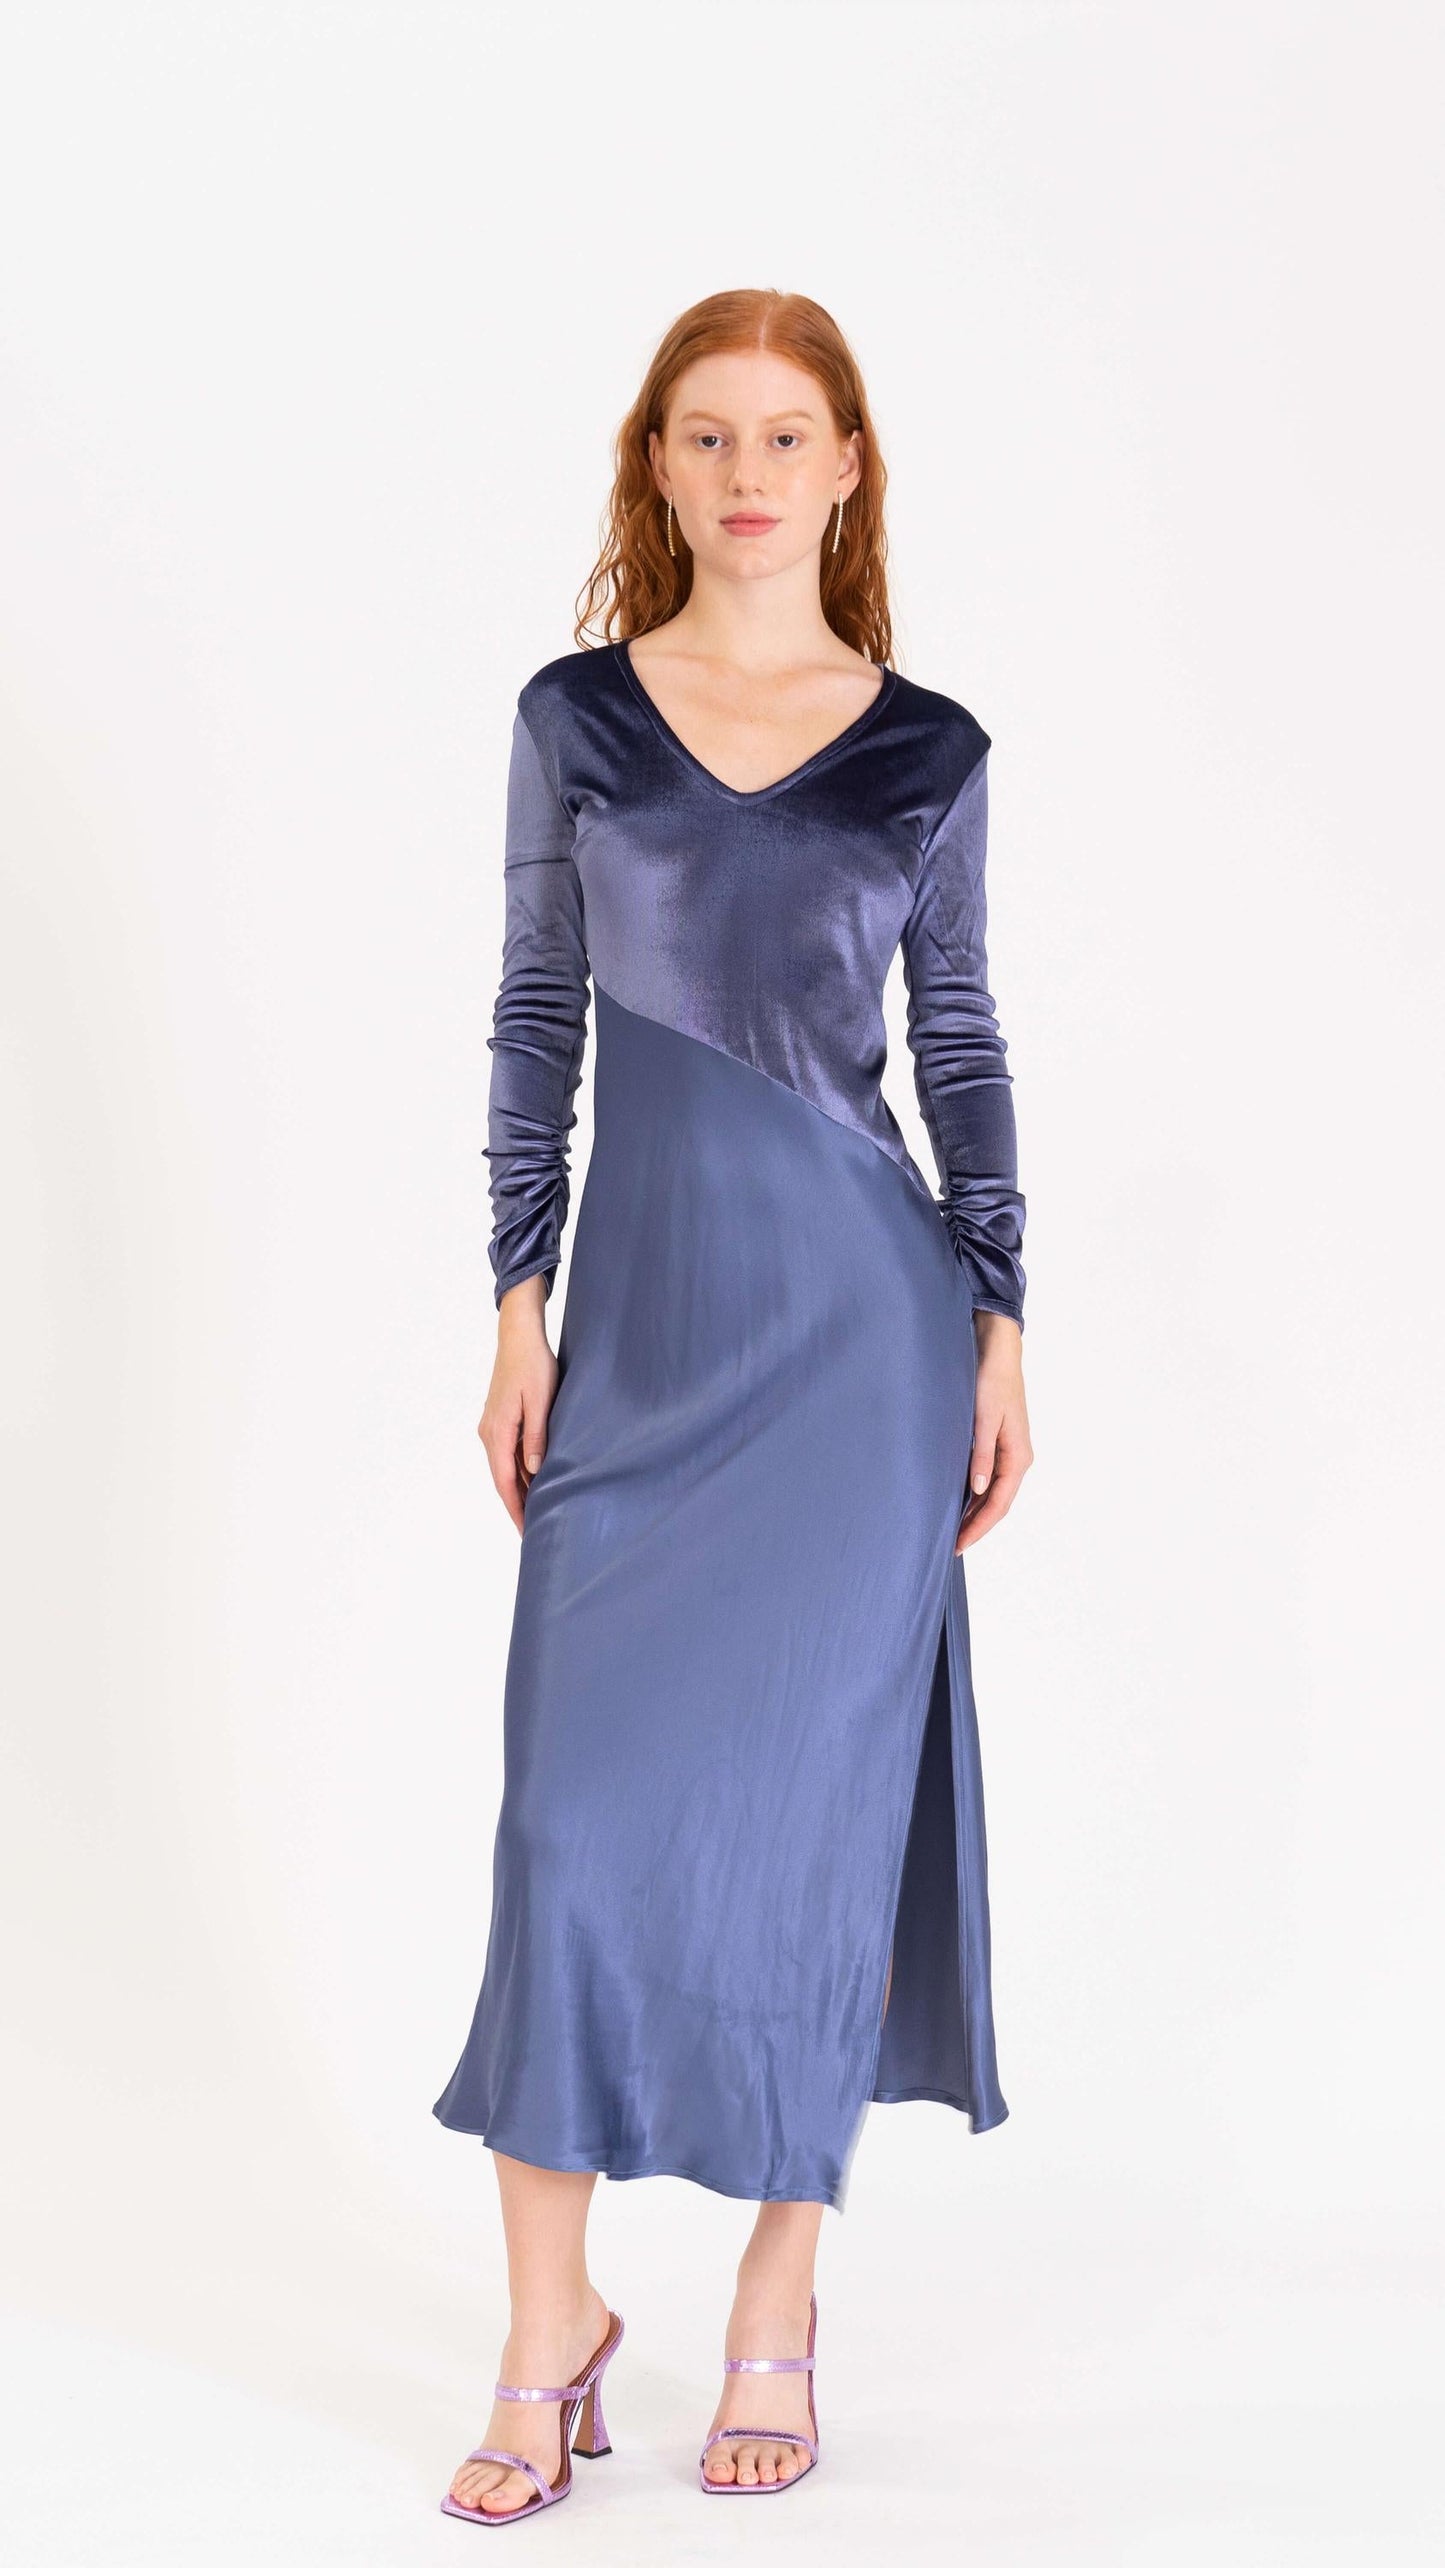 Velvet glossy dress